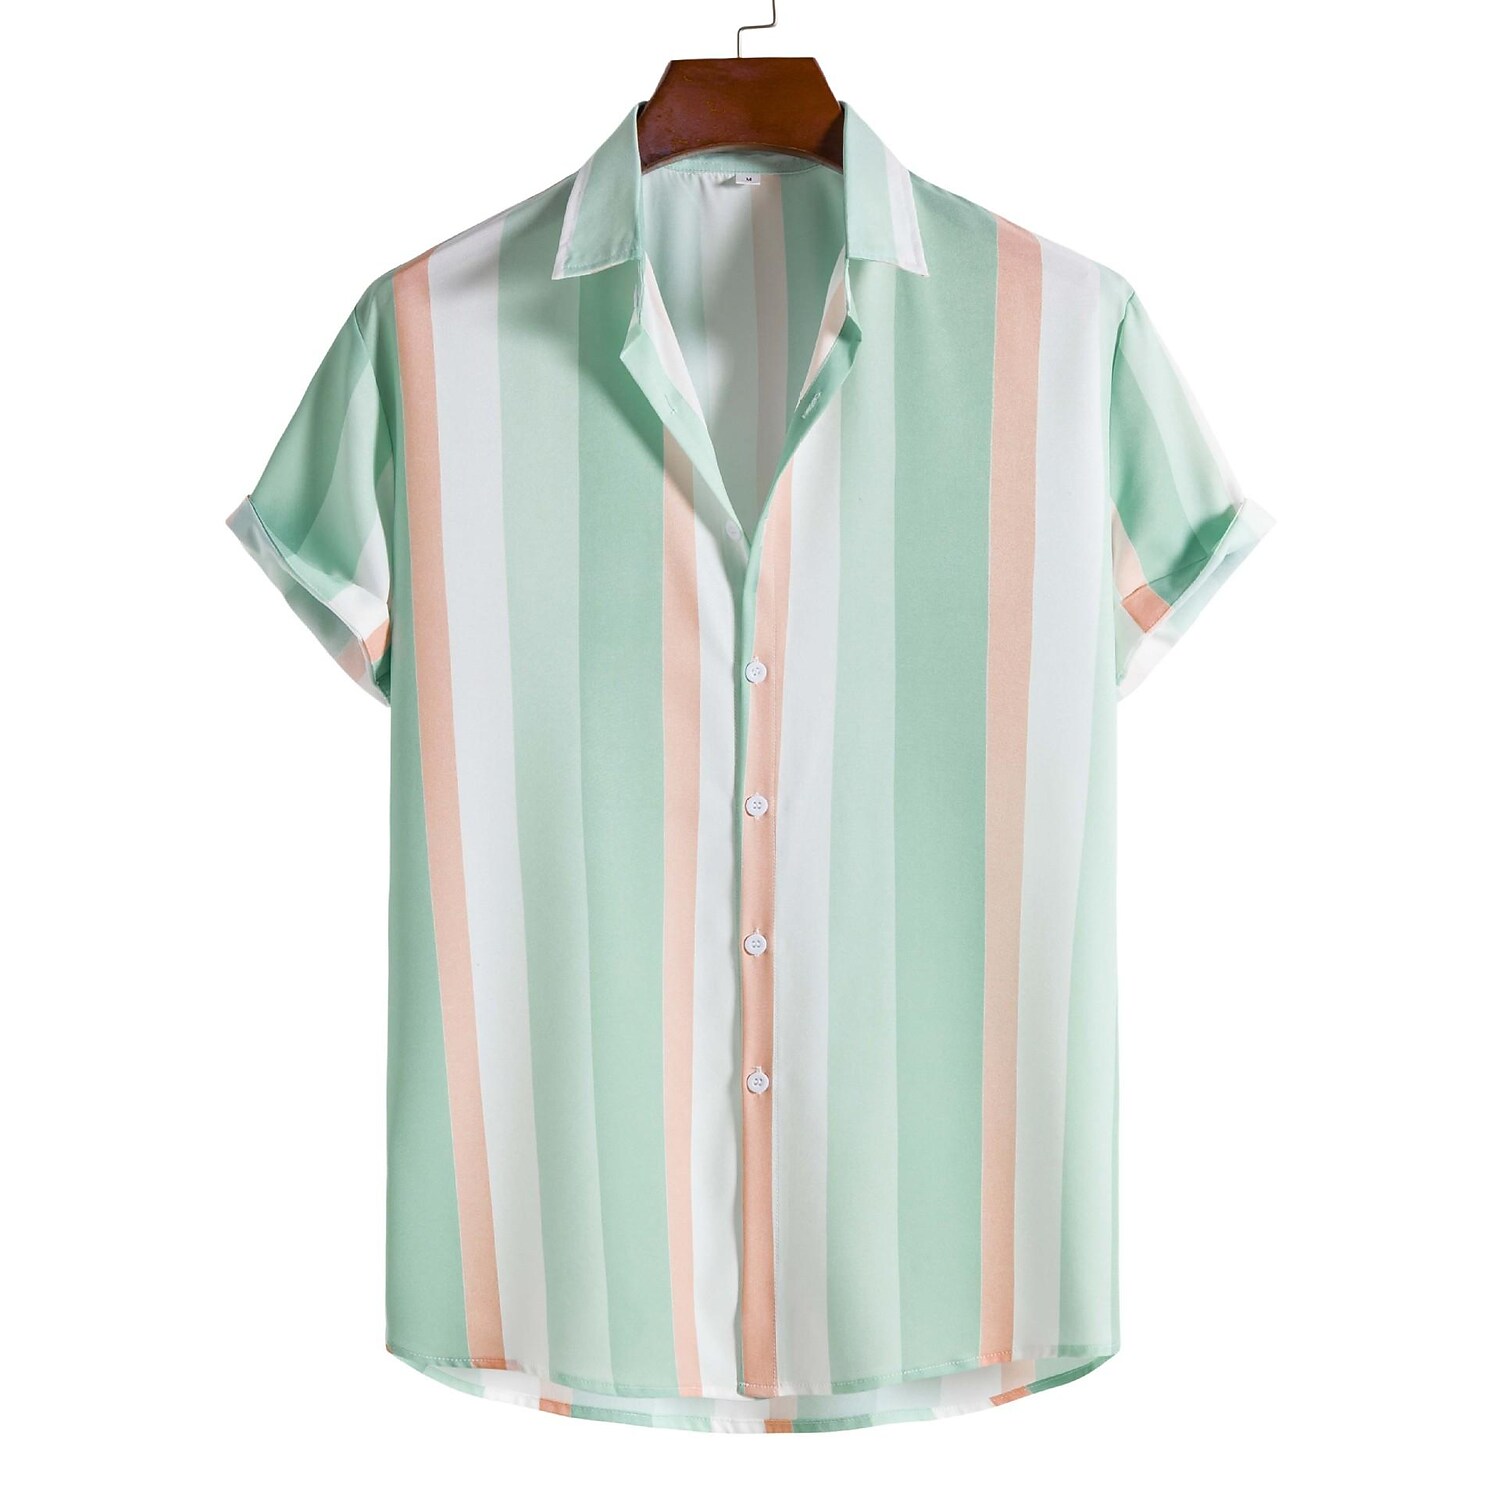 Men's Light Green Striped Print Short Sleeve Shirt